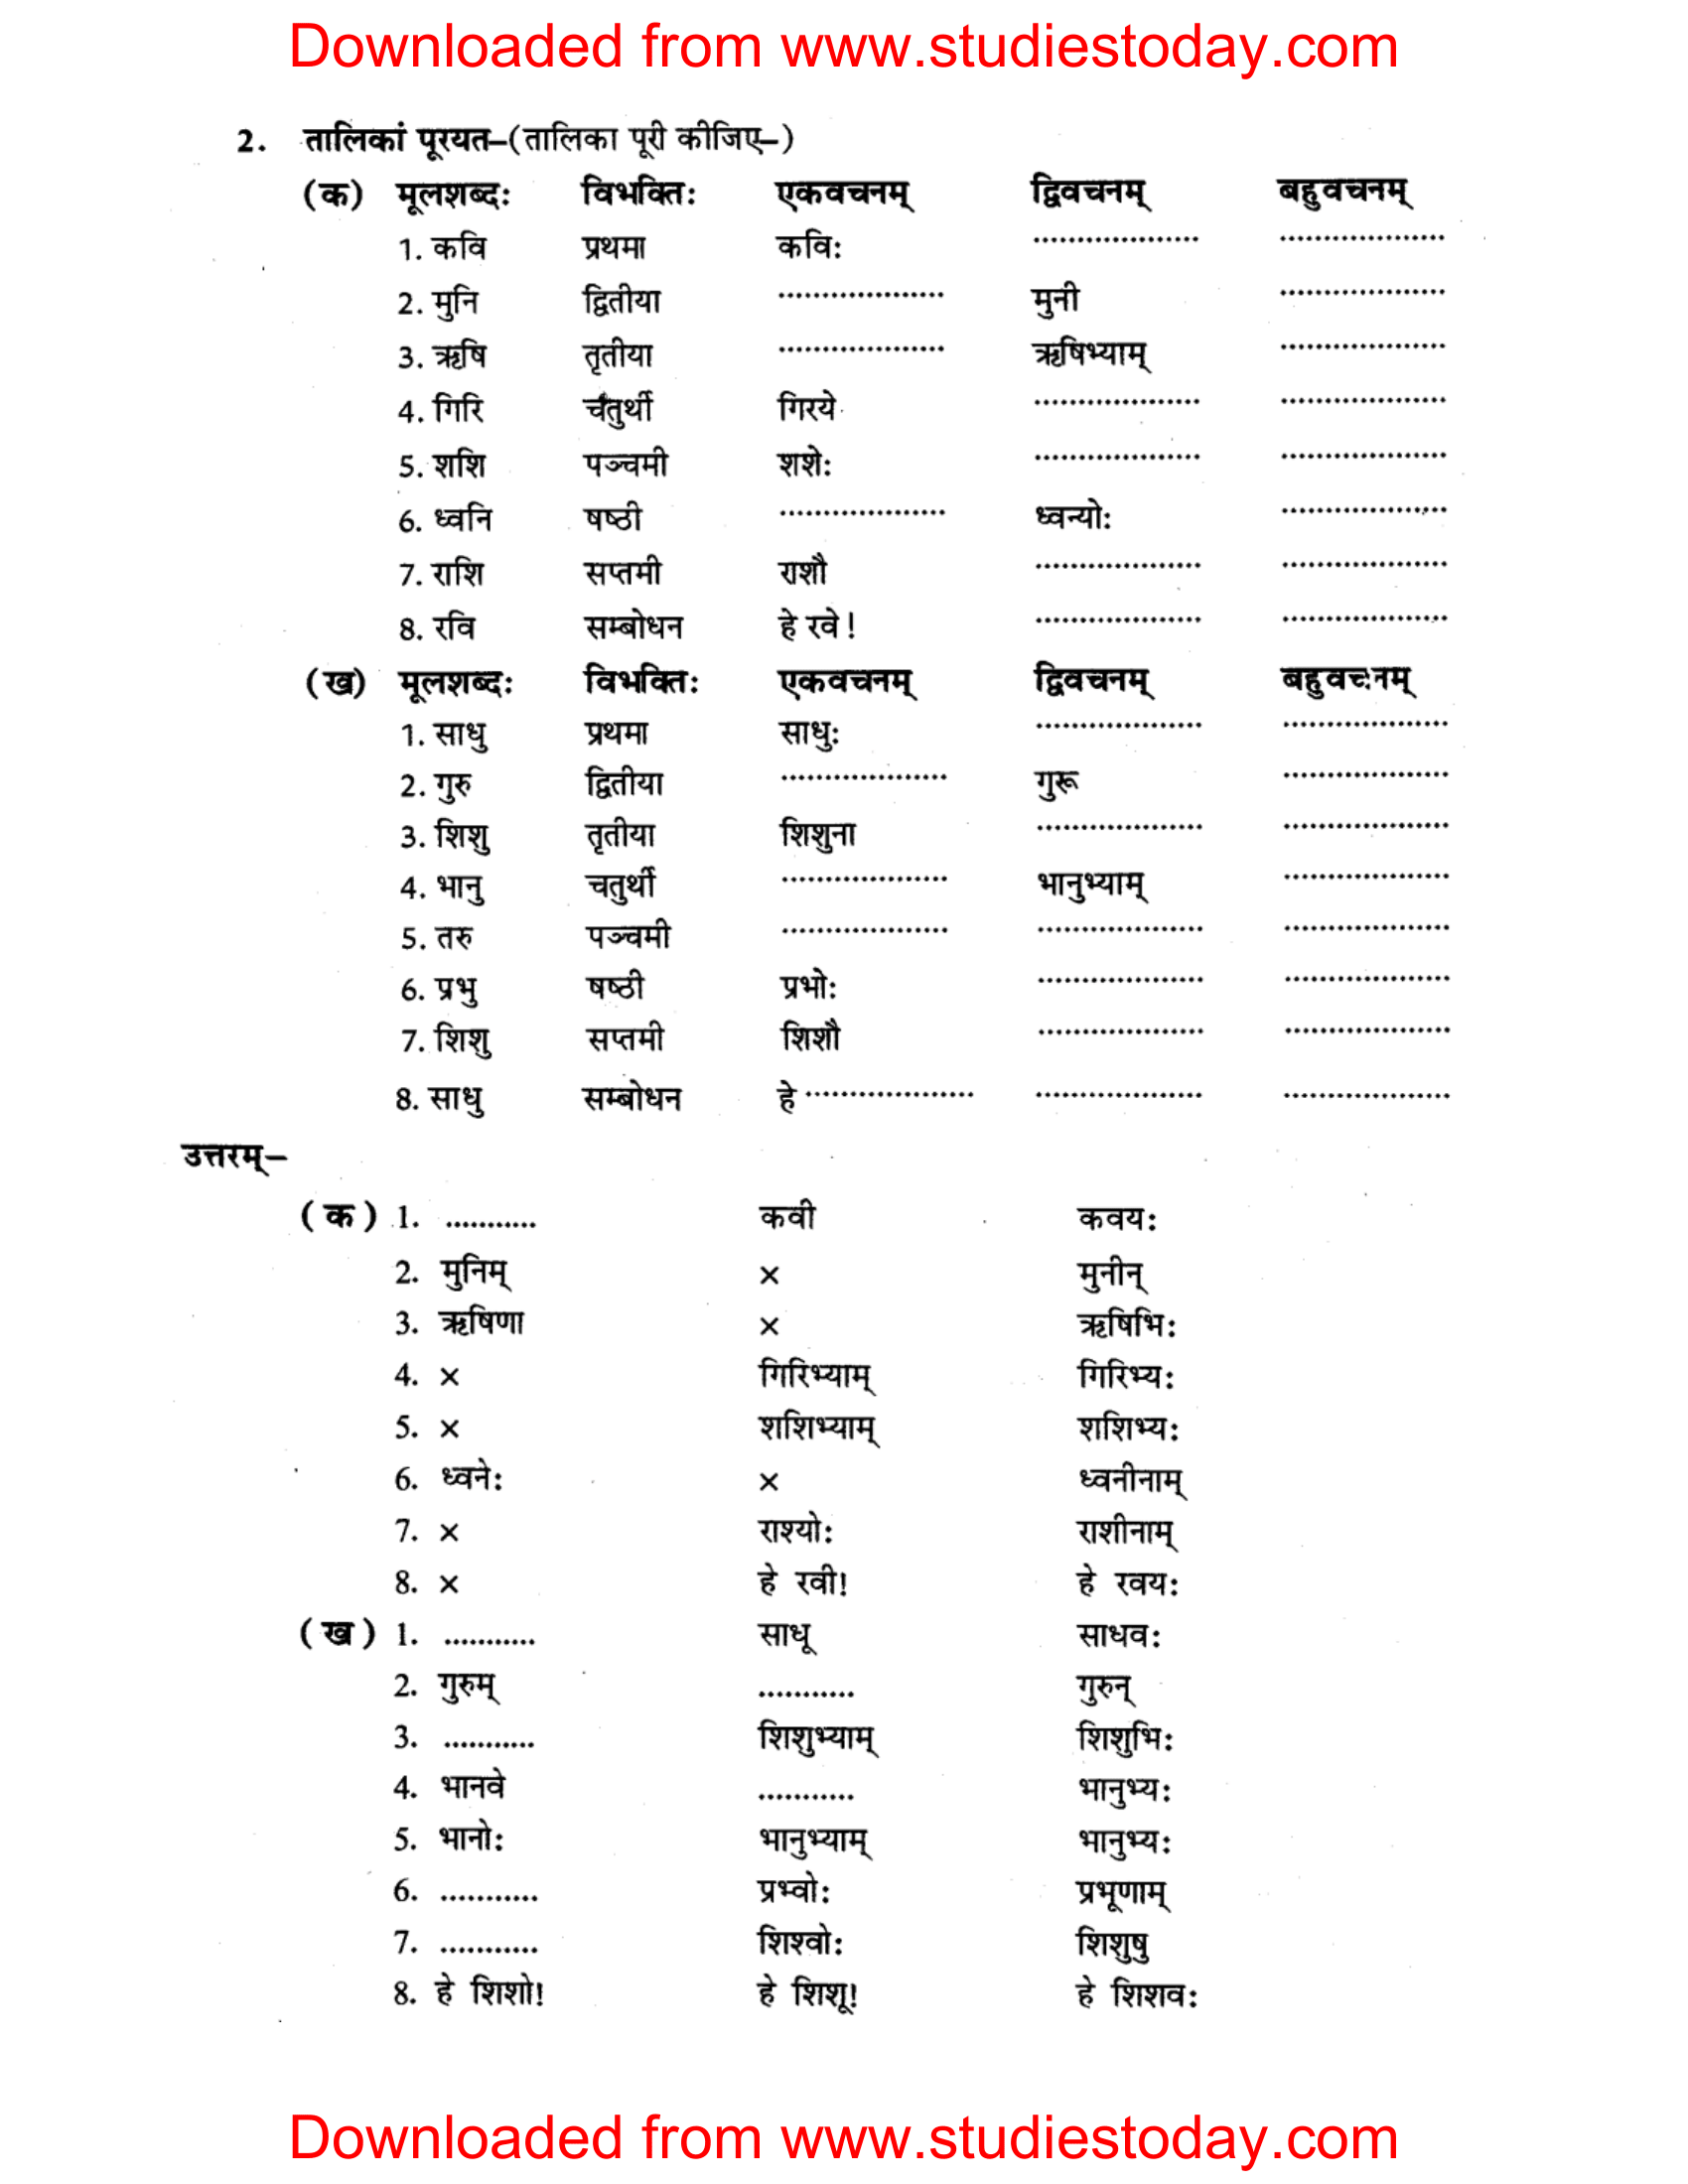 ncert-solutions-class-8-sanskrit-chapter-4-shabdrupani-abhyas-2